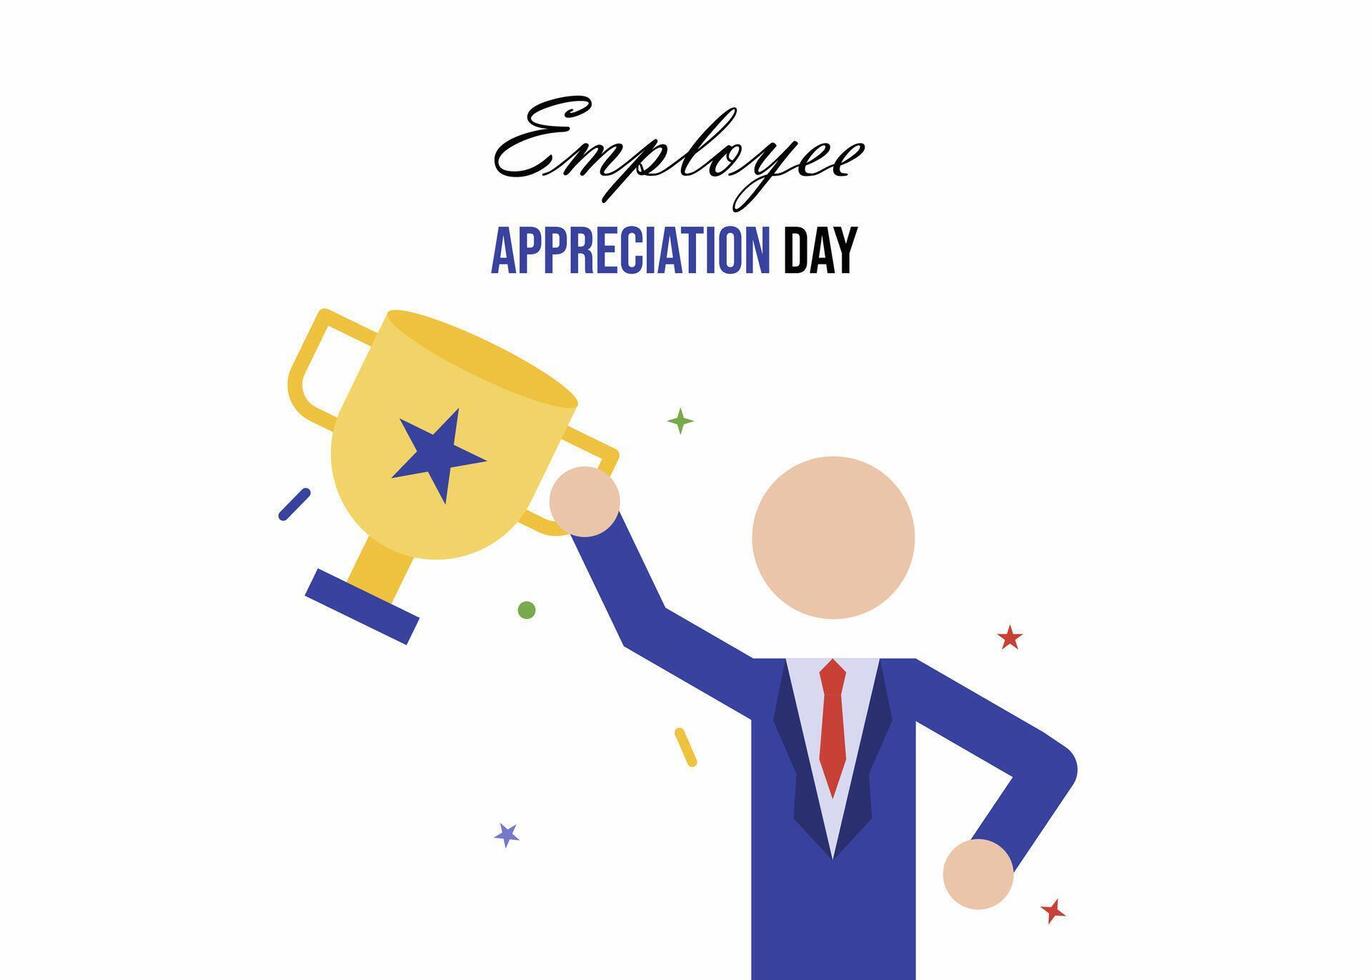 Employee appreciation day vector